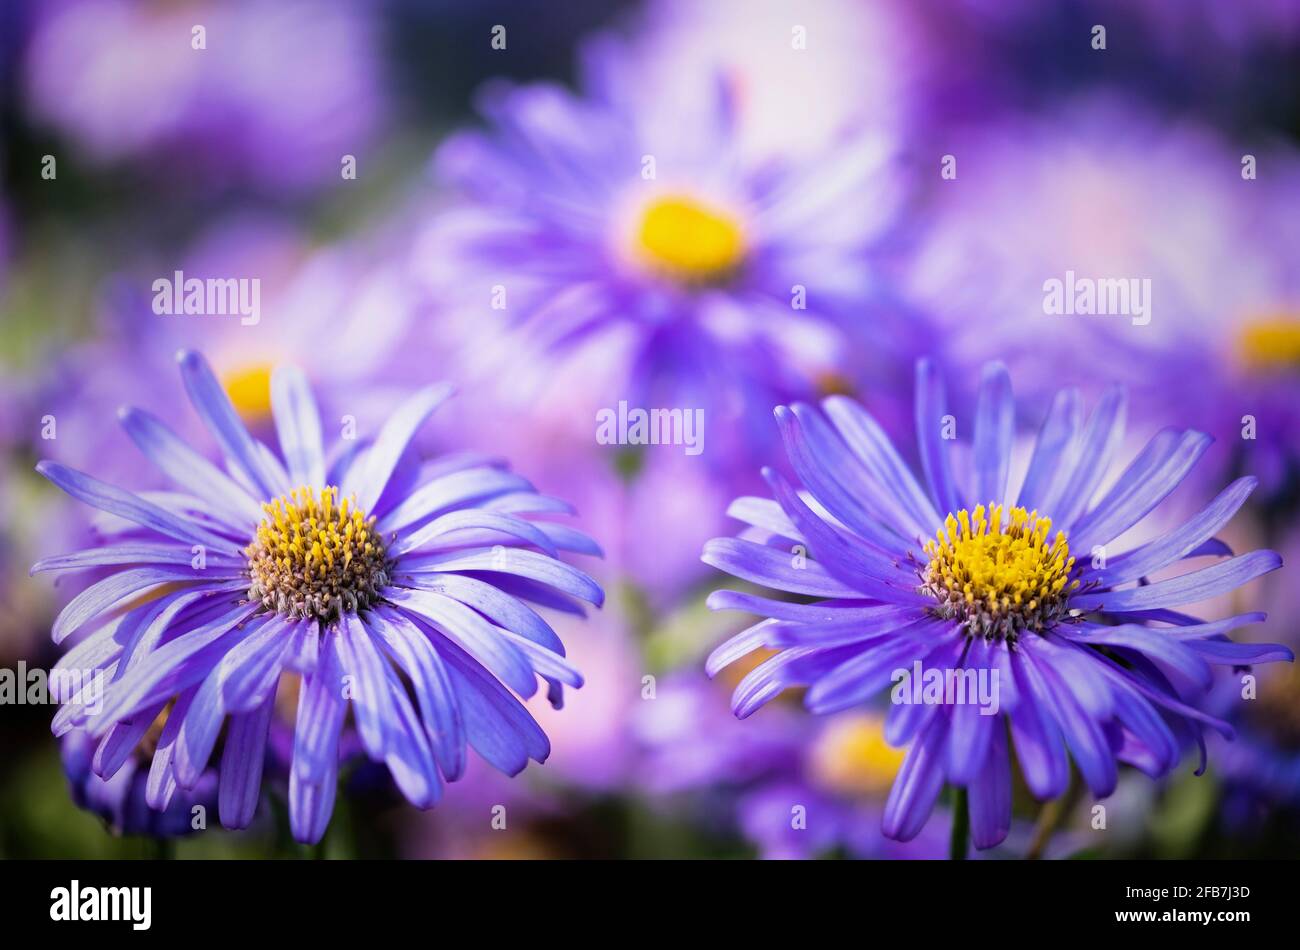 Asters, Asteraceae, vue rapprochée de deux fleurs violettes aux étamines jaunes. Banque D'Images